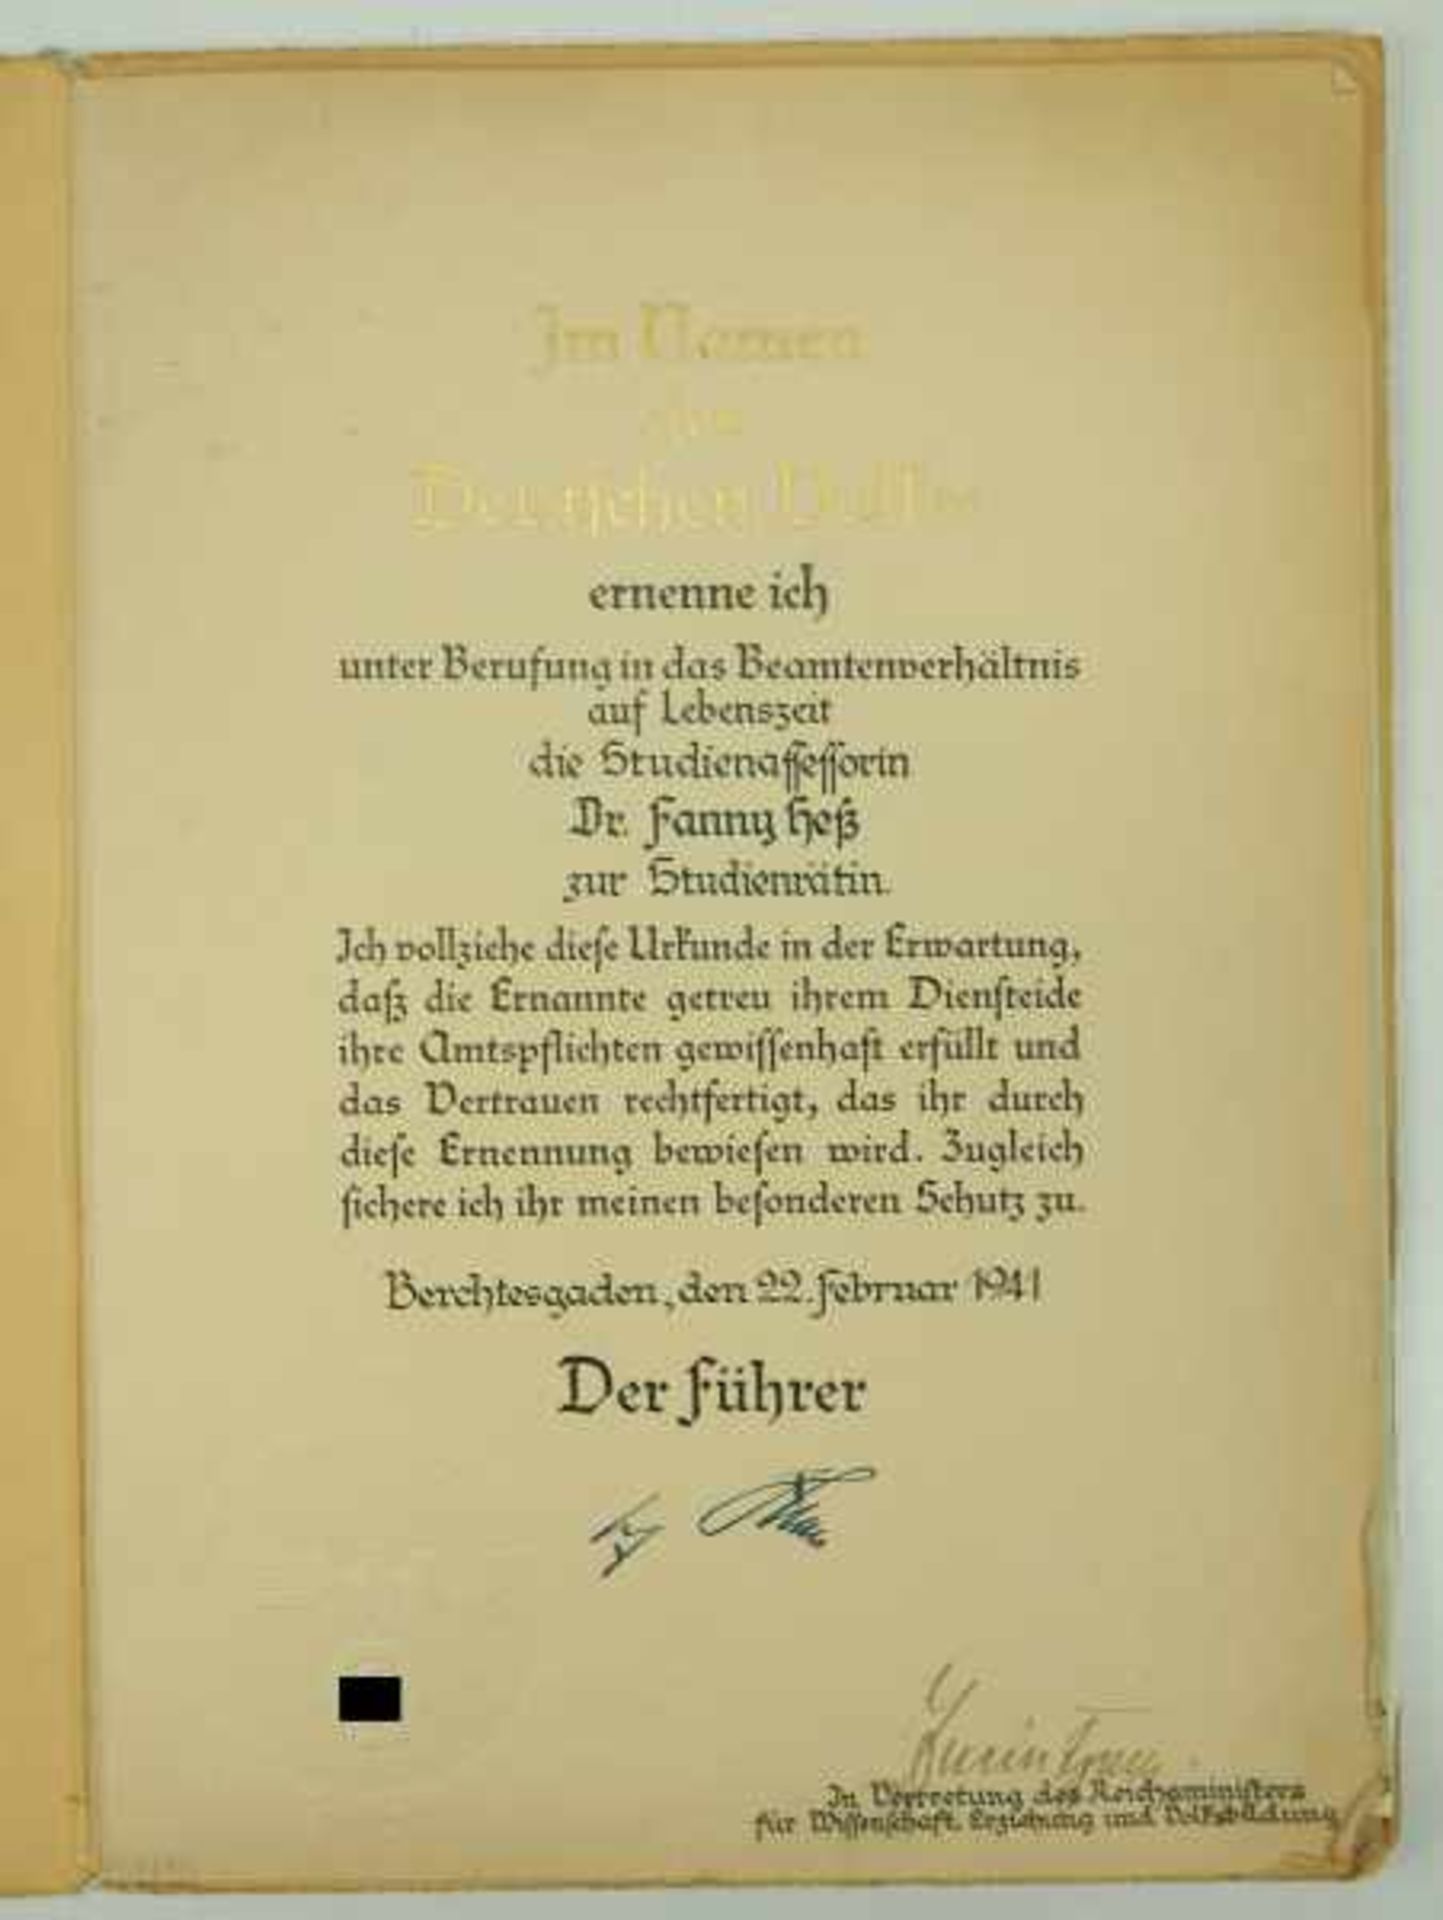 3.1.) Urkunden / DokumenteNachlass einer Frau Dr. Studienrätin.- Patent zur Studienrätin ( - Image 2 of 2